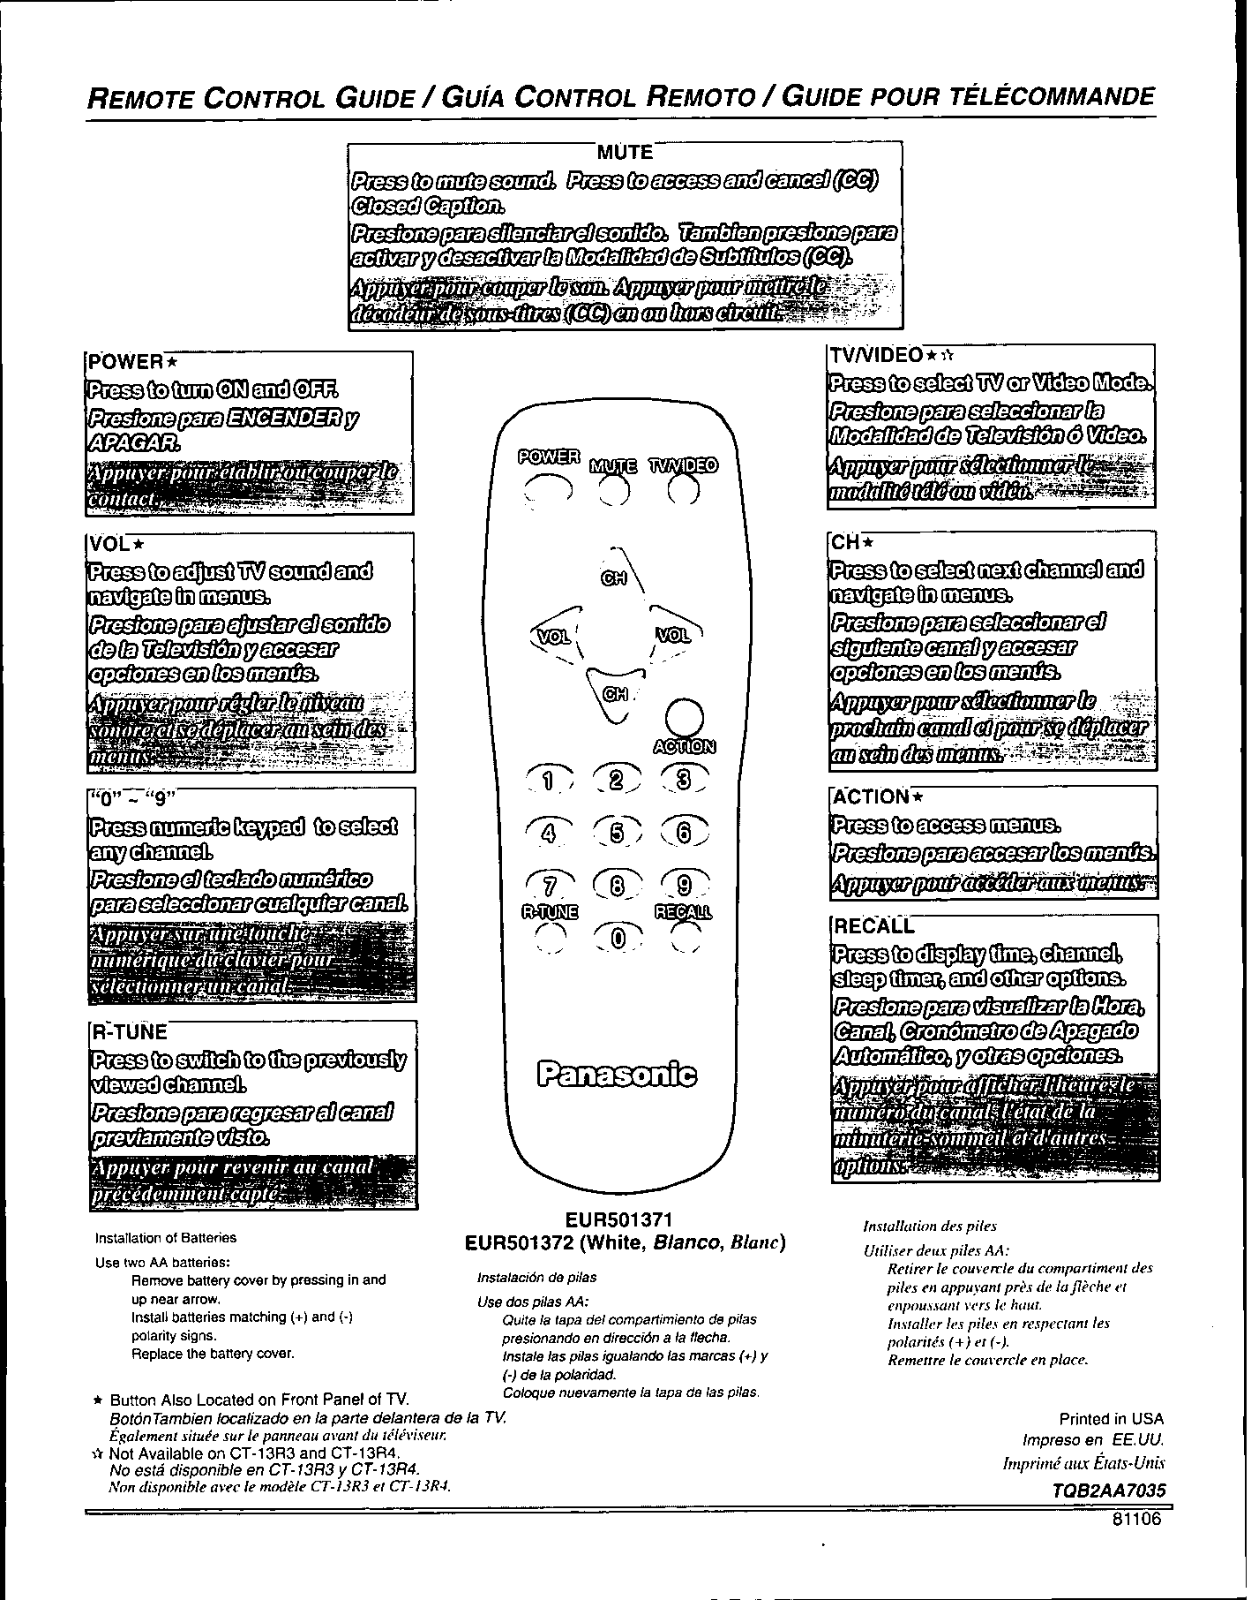 Panasonic EUR501371, EUR501372 User Manual